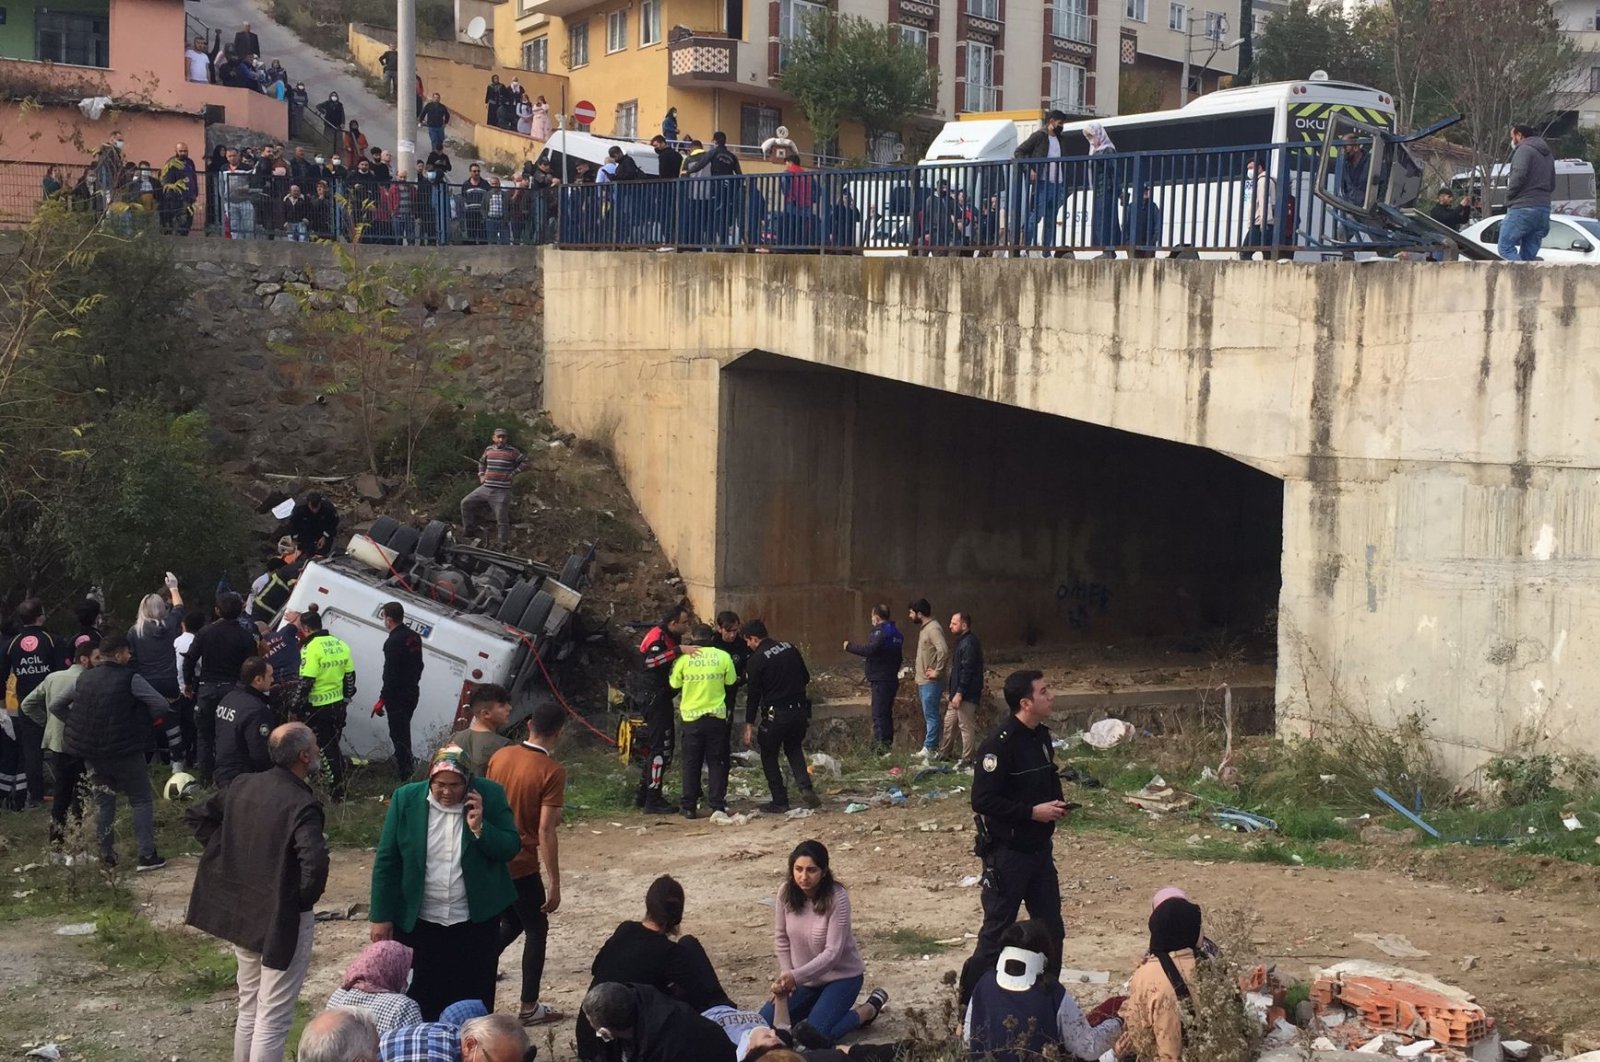 Pesawat ulang-alik siswa jatuh ke sungai di Gebze Turki NW, 2 tewas